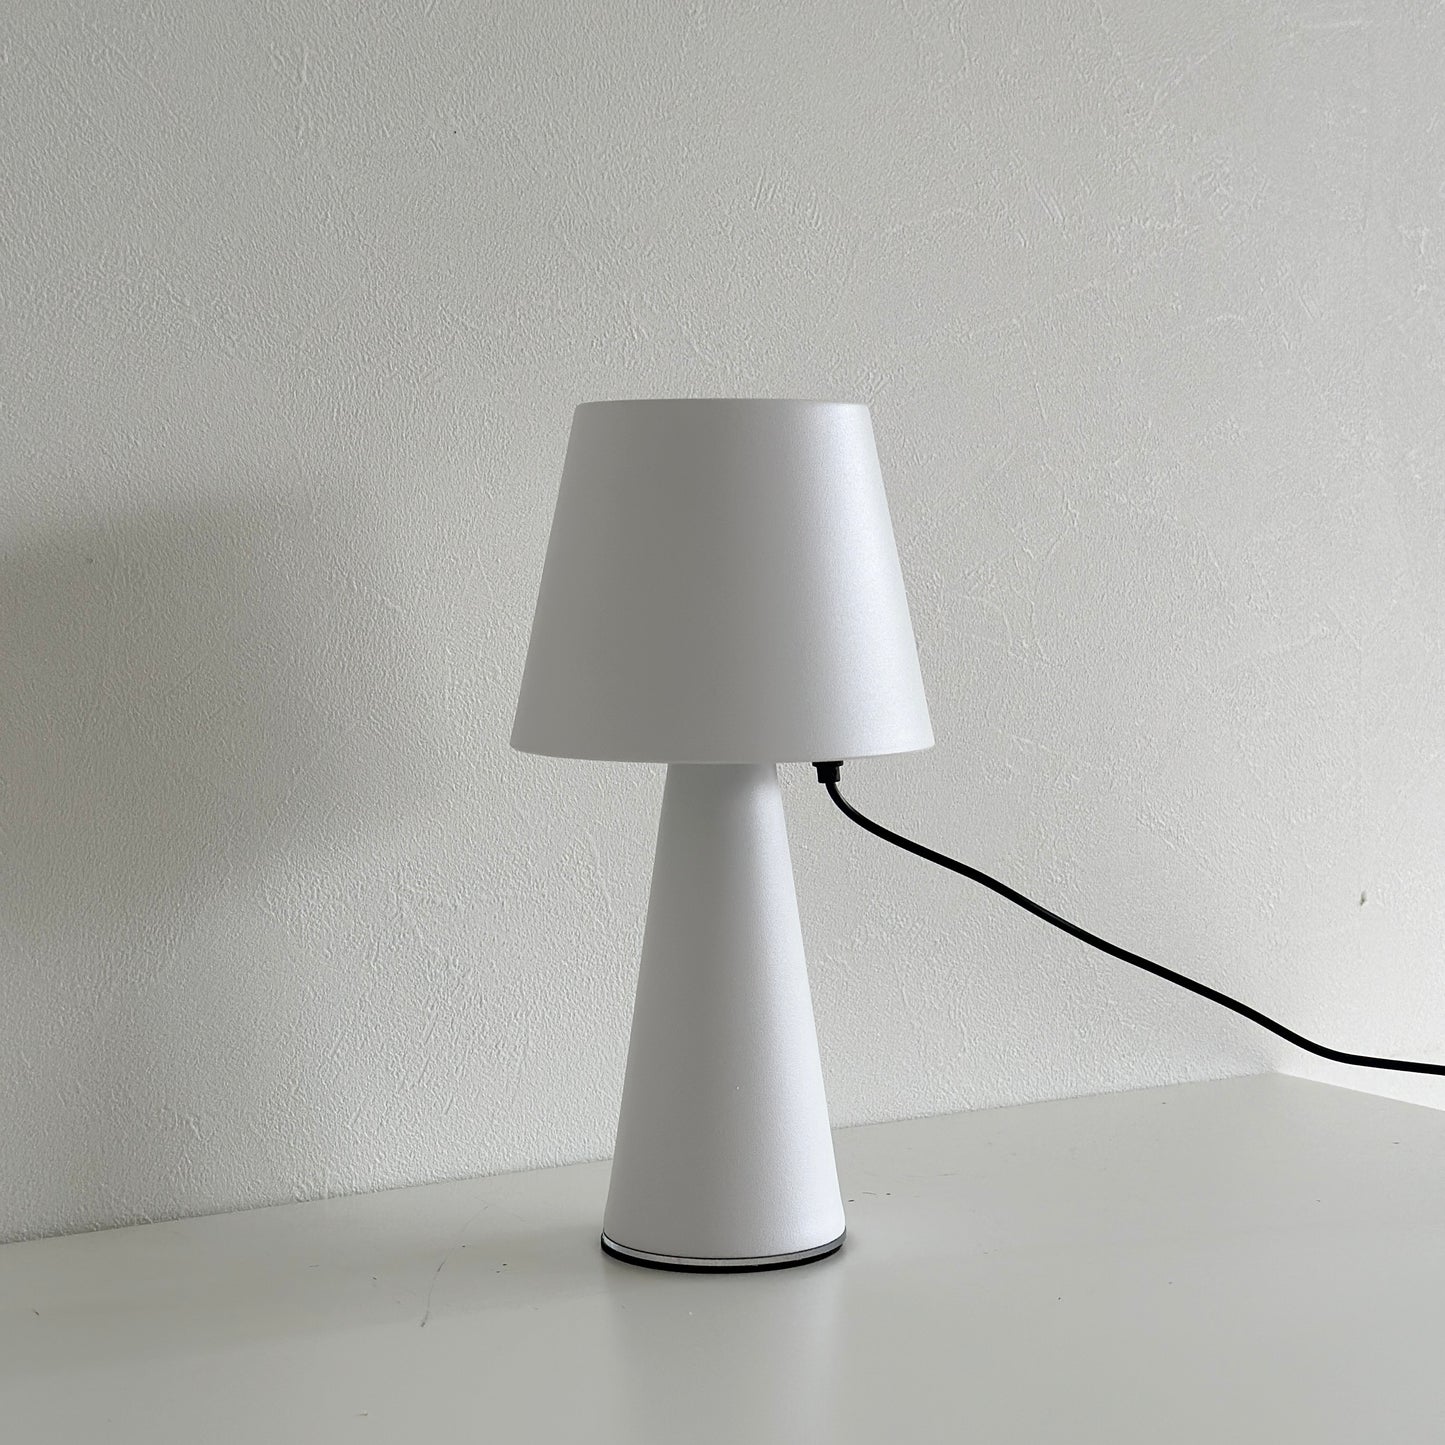 マット素材のシンプルな白色のテーブルランプが充電されている様子